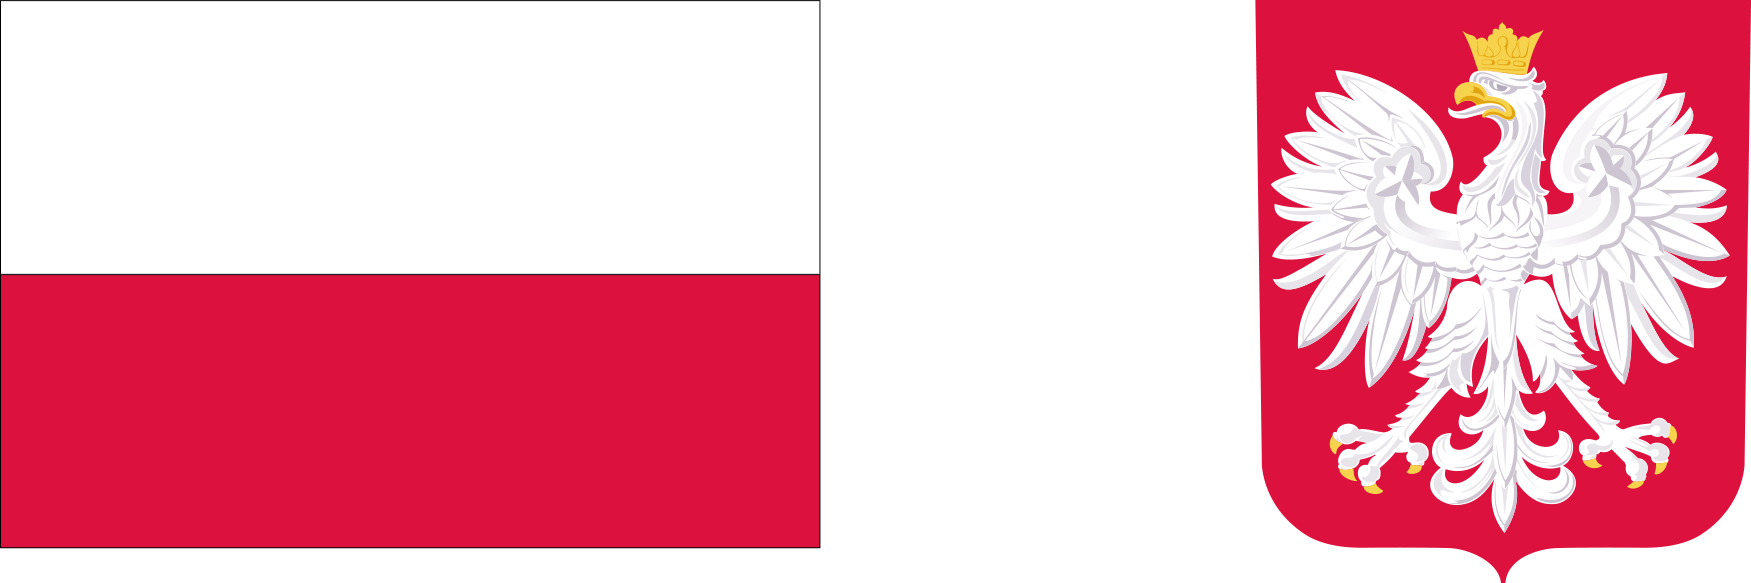 Po lewej stronie flaga Rzeczypospolitej Polskiej - prostokąt z dwoma poziomymi pasami, białym i czerwonym, po prawej stronie wizerunek godła Rzeczypospolitej Polskiej - biały orzeł w złotej koronie na czerwonym tle